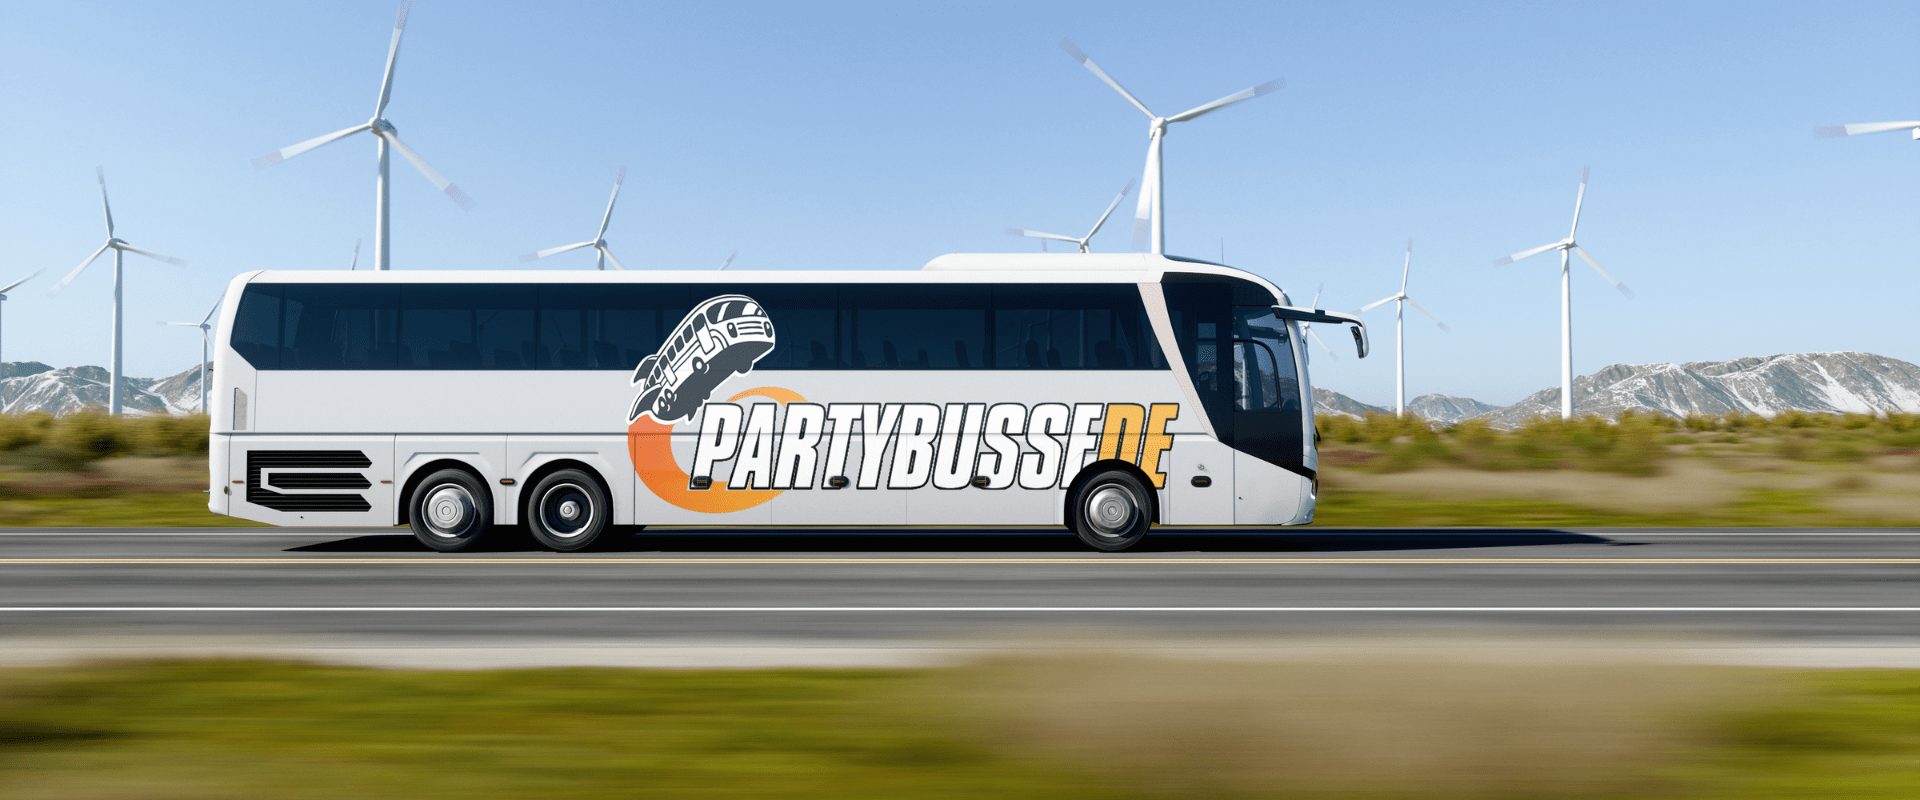 Partybusse - Netzwerk